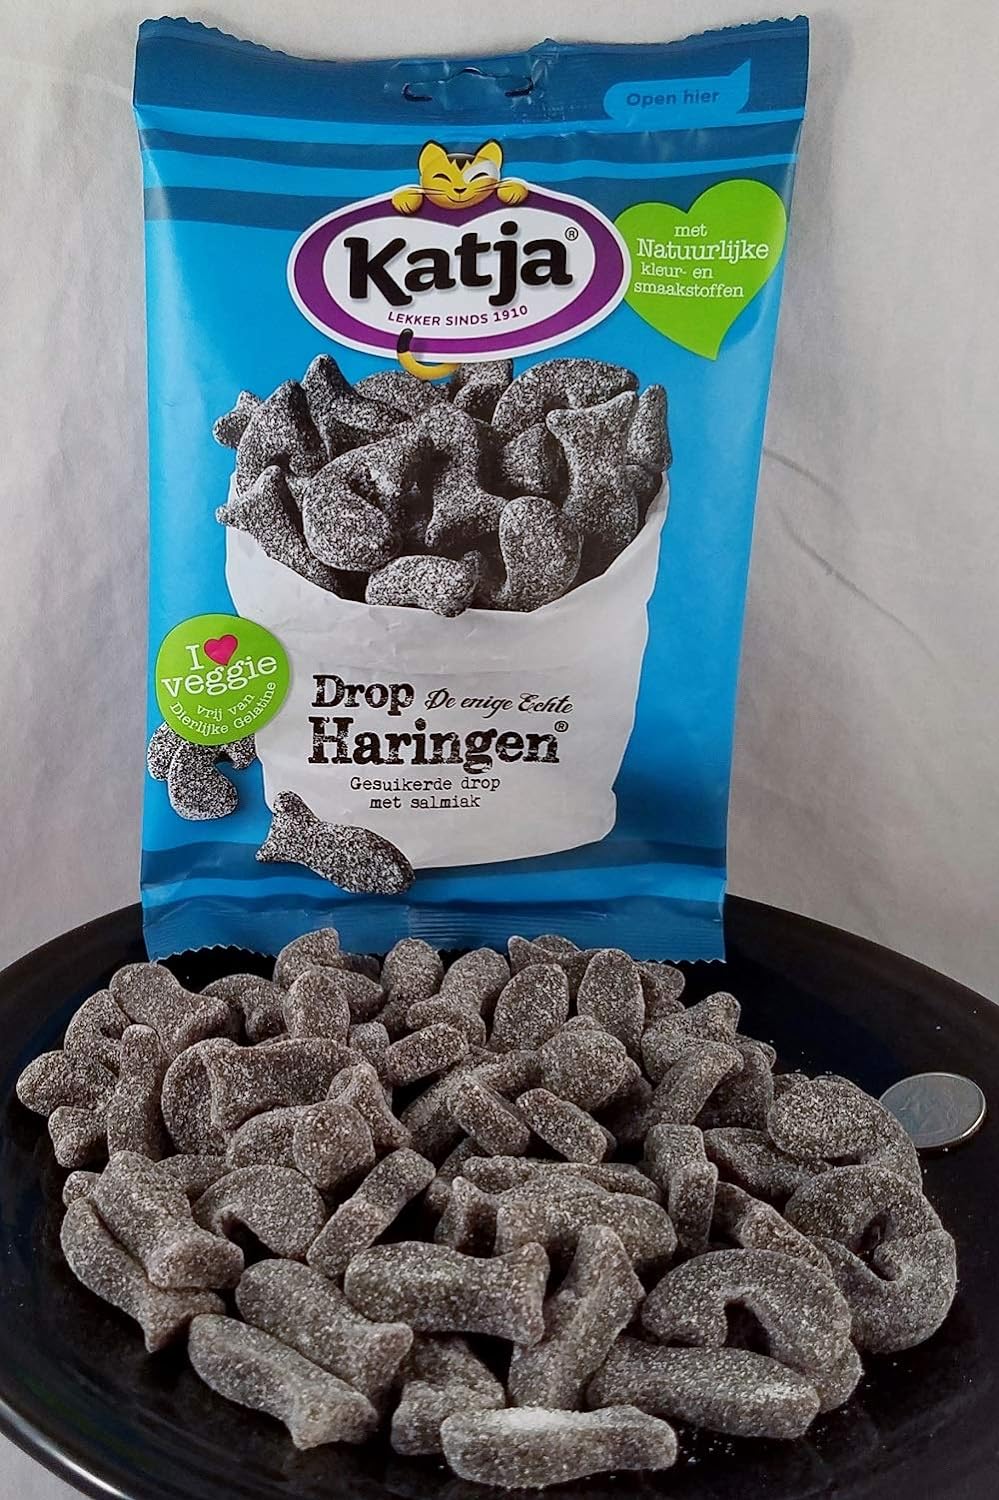 Katja Drop Haringen (Herring Shaped Licorice - Salty)2 bags 